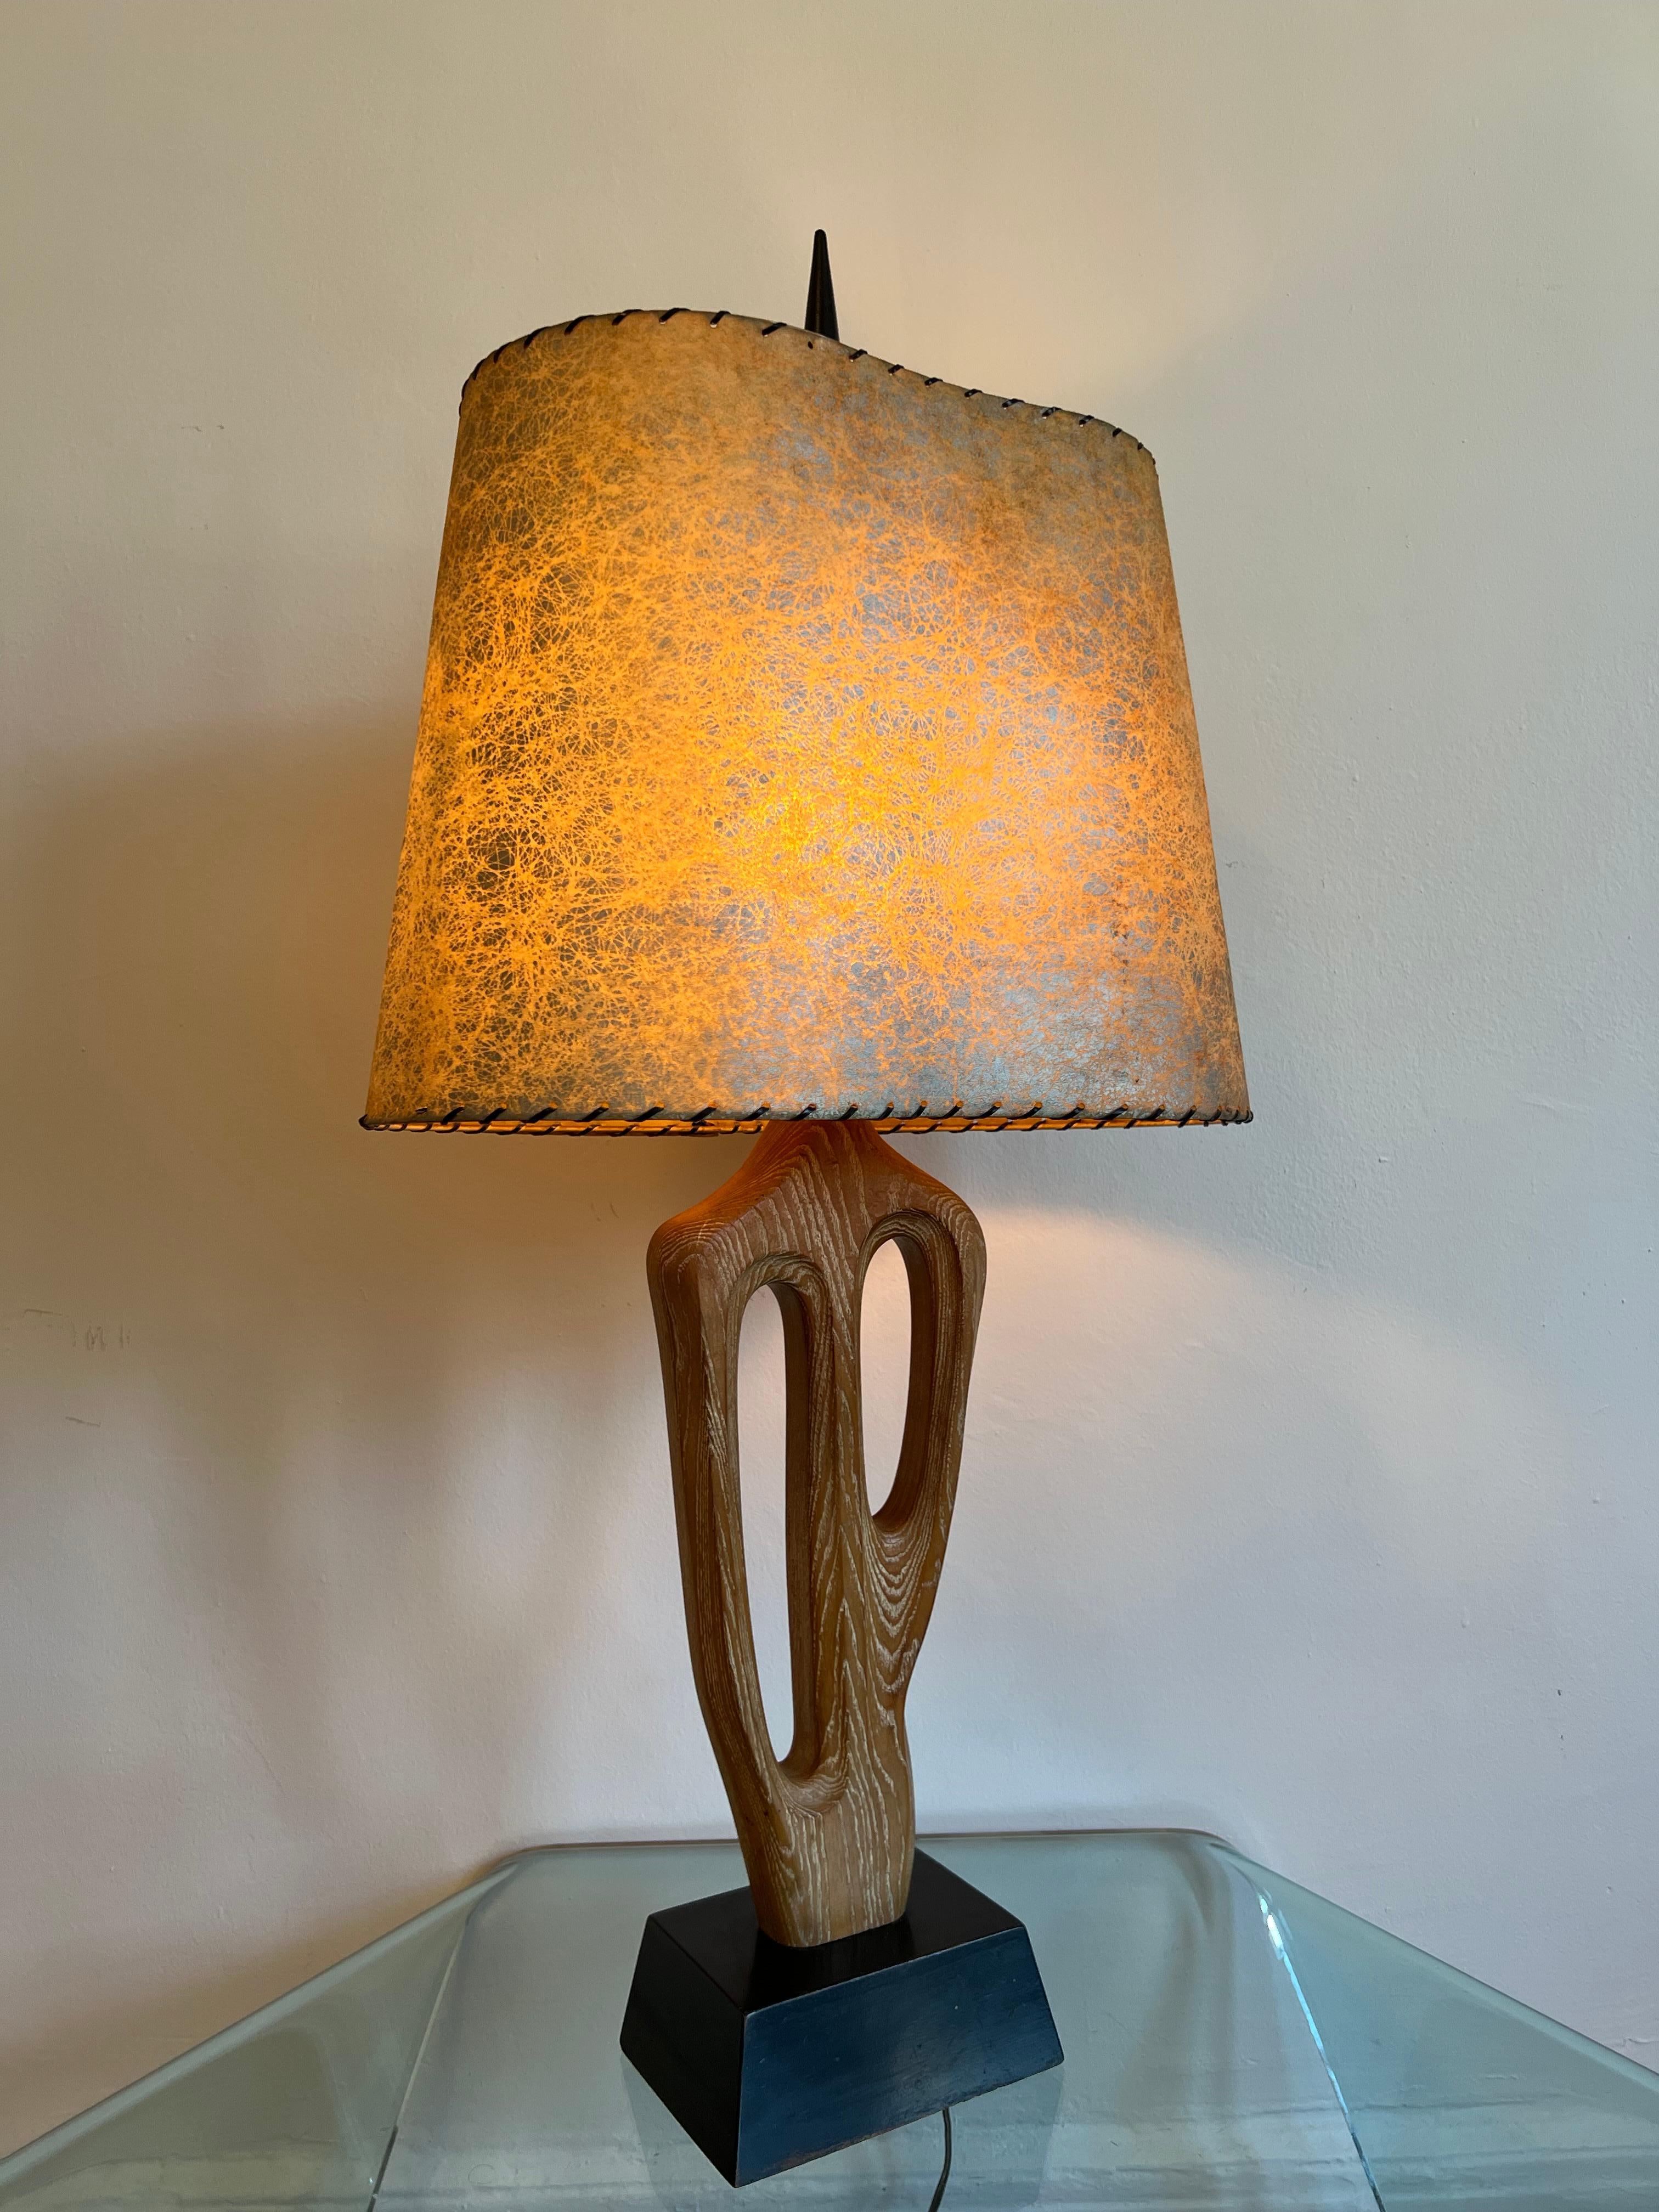 Yasha Heifetz entwarf eine Lampe für das Unternehmen Heifetz Lighting Co., das sie selbst herstellt. 

Eine hohe, skulpturale, biomorphe Tischlampe aus kerosiertem Eichenholz auf einem schwarz lackierten Holzsockel. 

Aus einem einzigen Stück Eiche